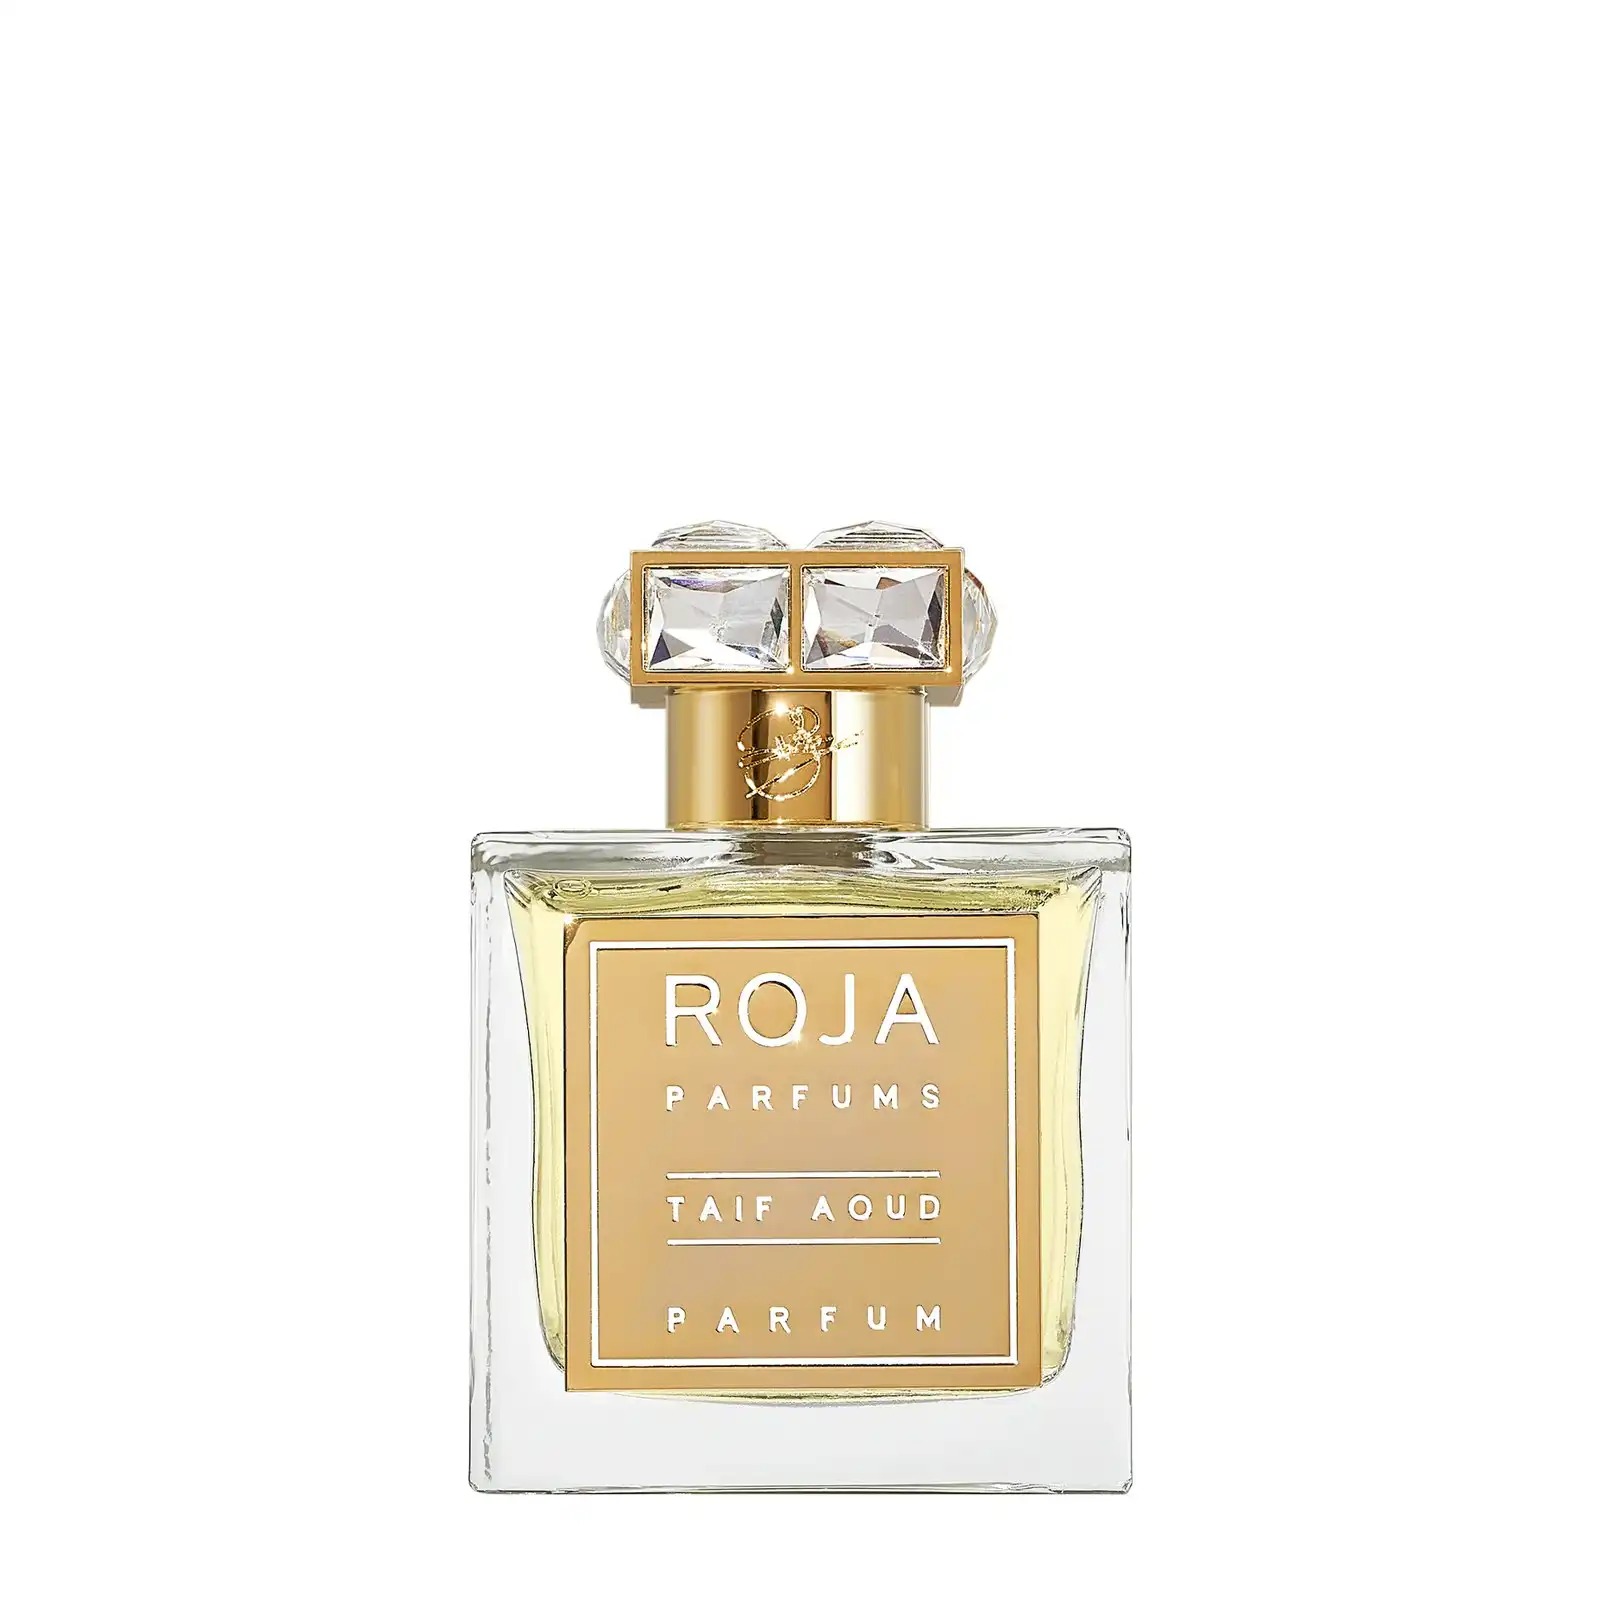 Roja Perfums Taif Aoud Parfum 100ml